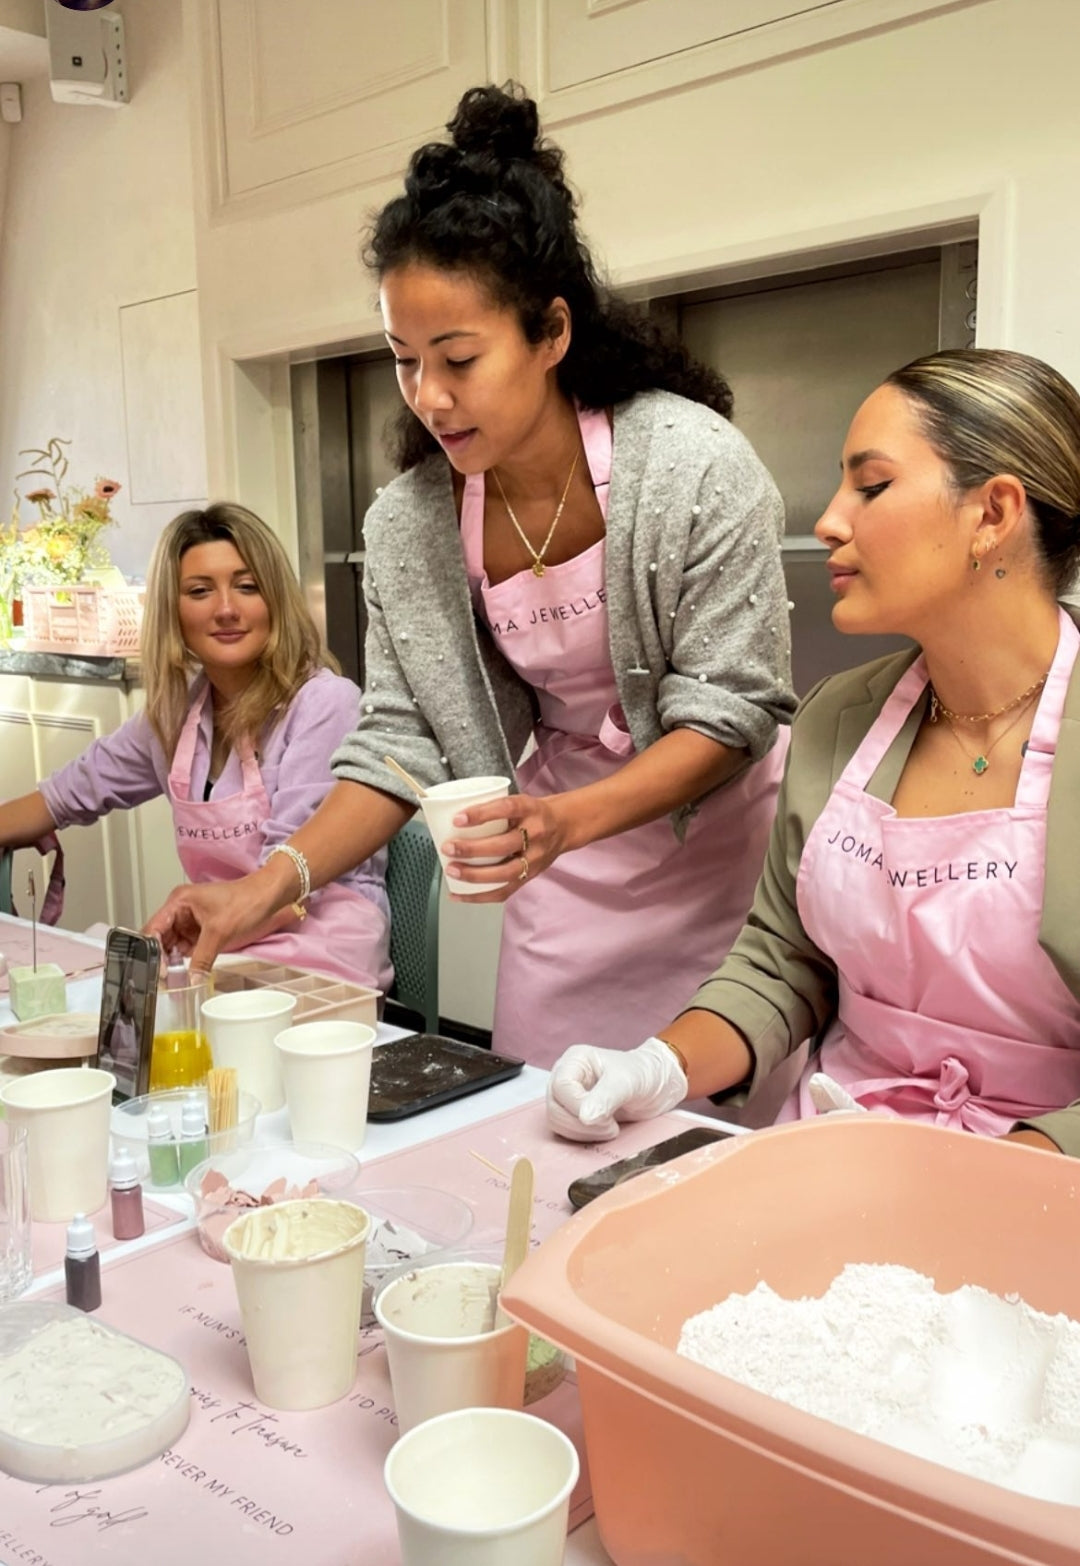 Women Will Create Xmas fair -Terrazzo Workshops